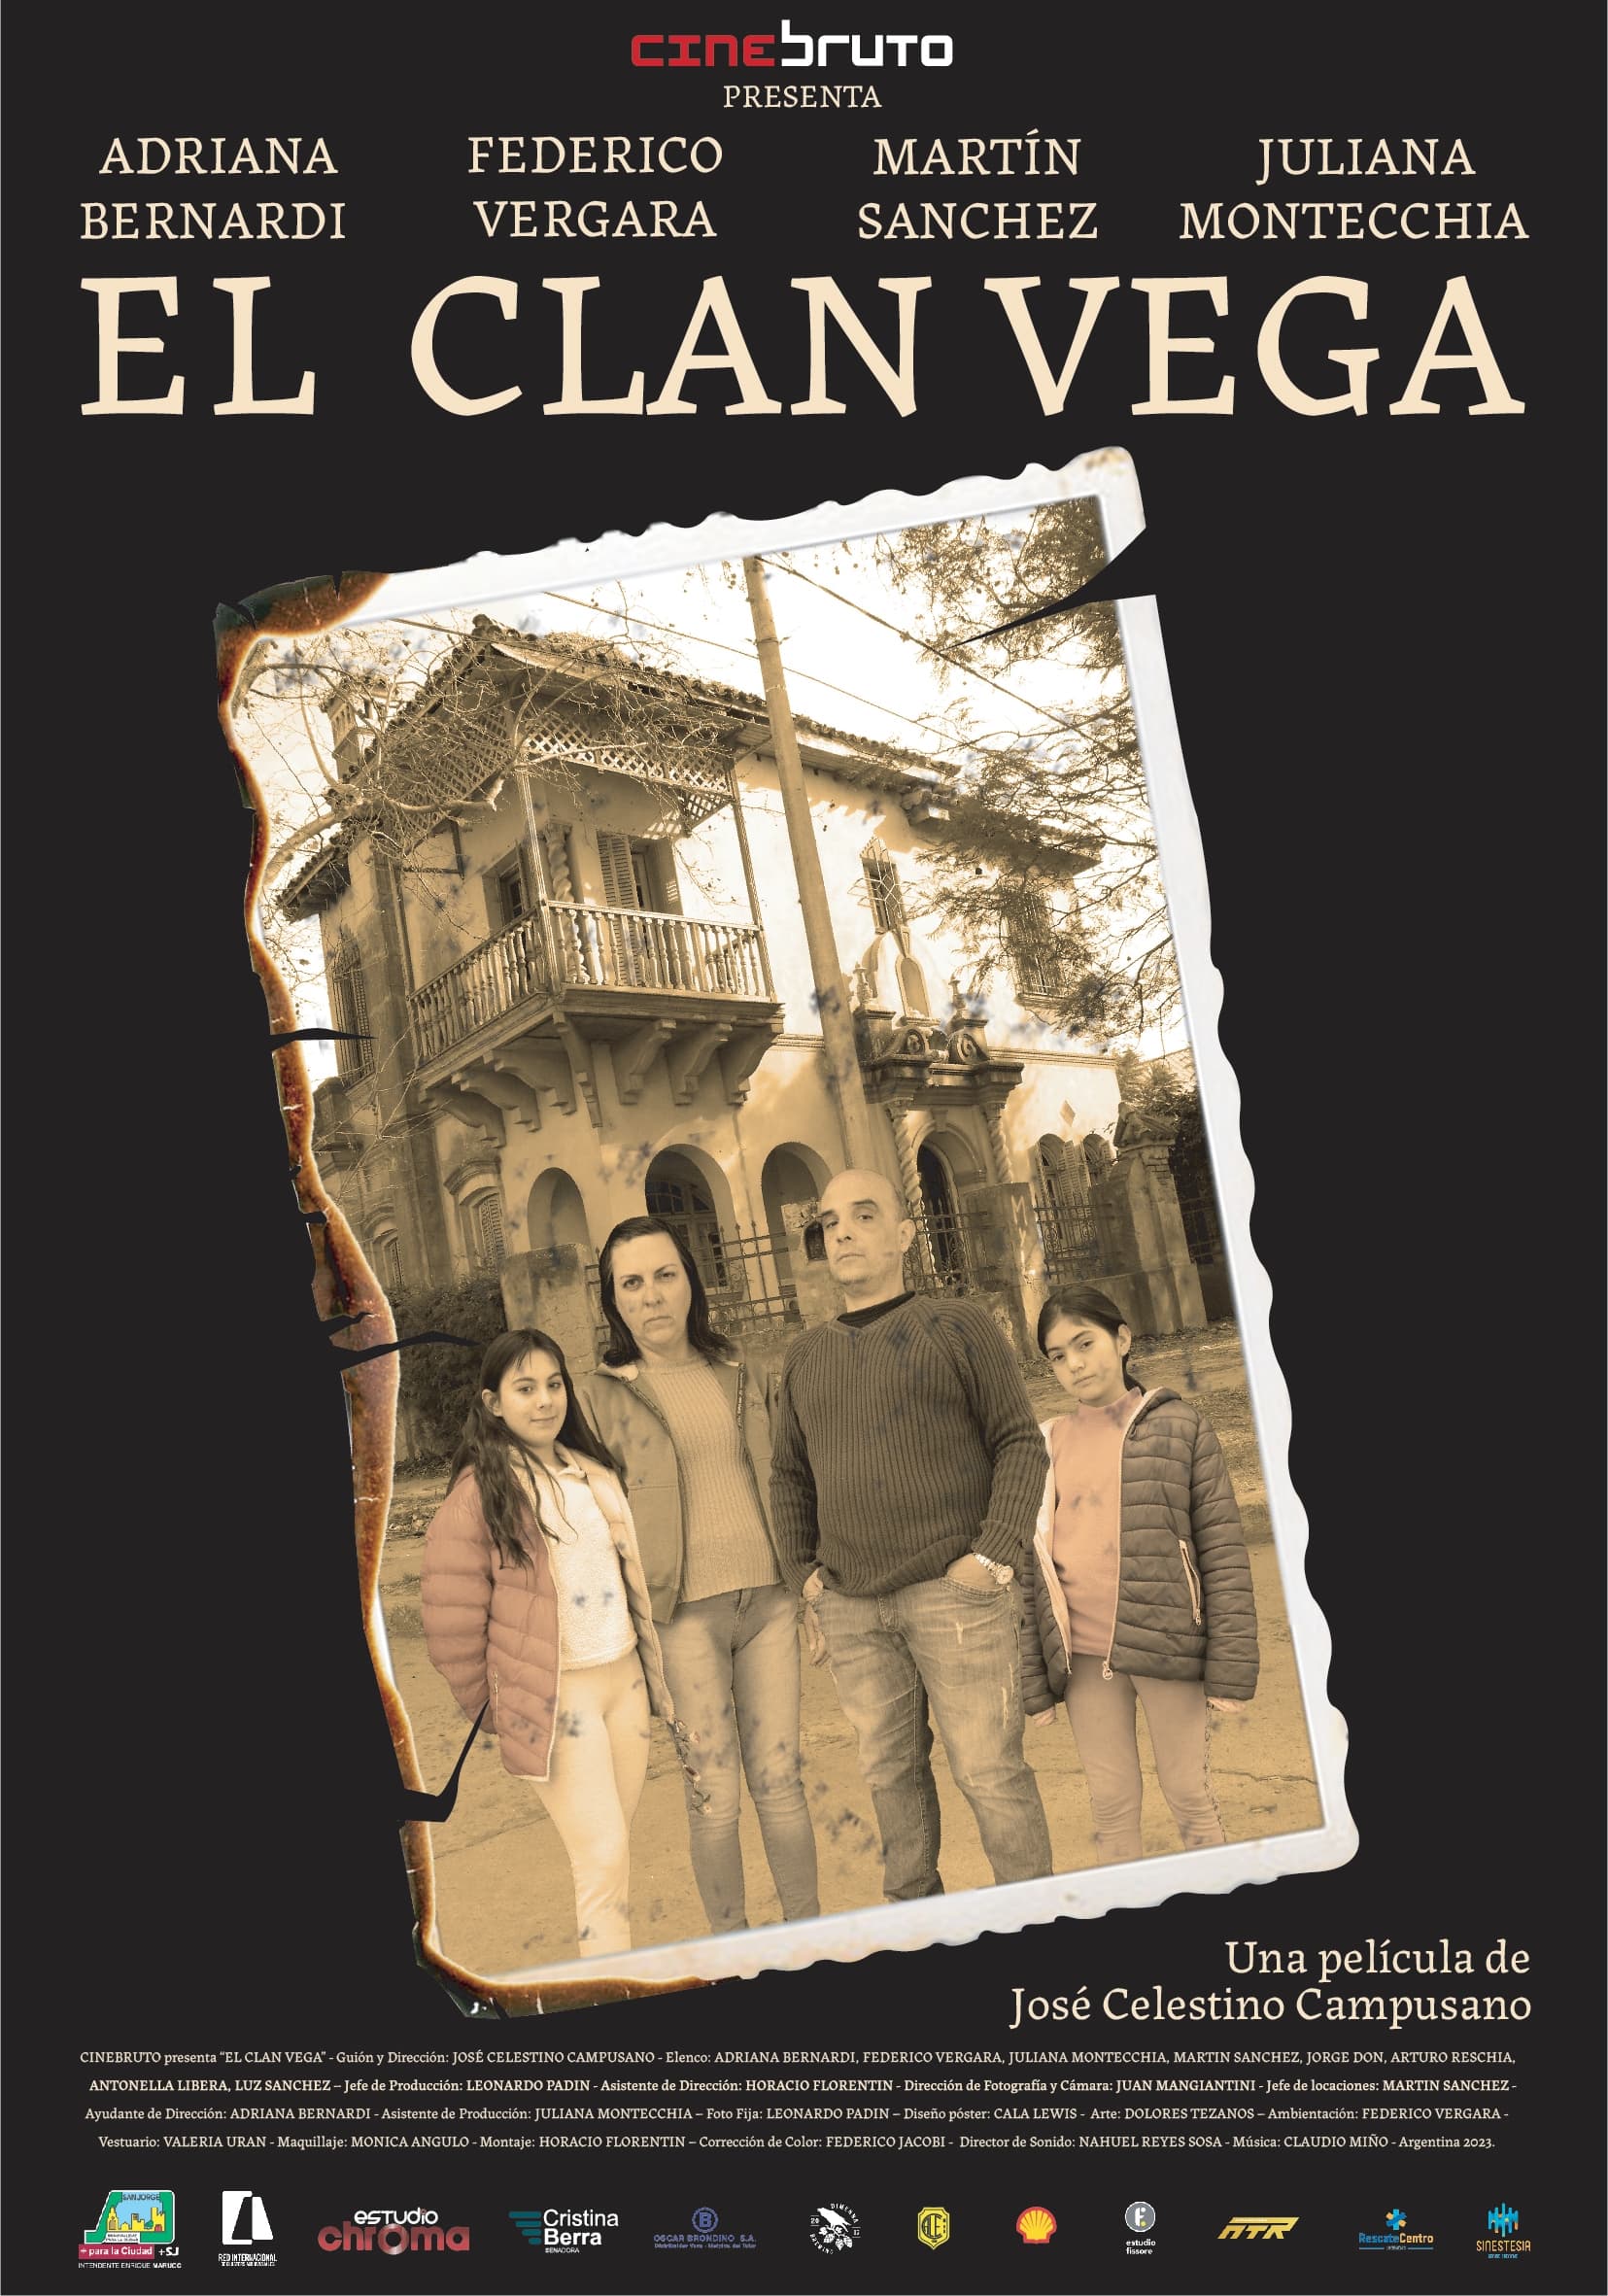 The Vega Clan